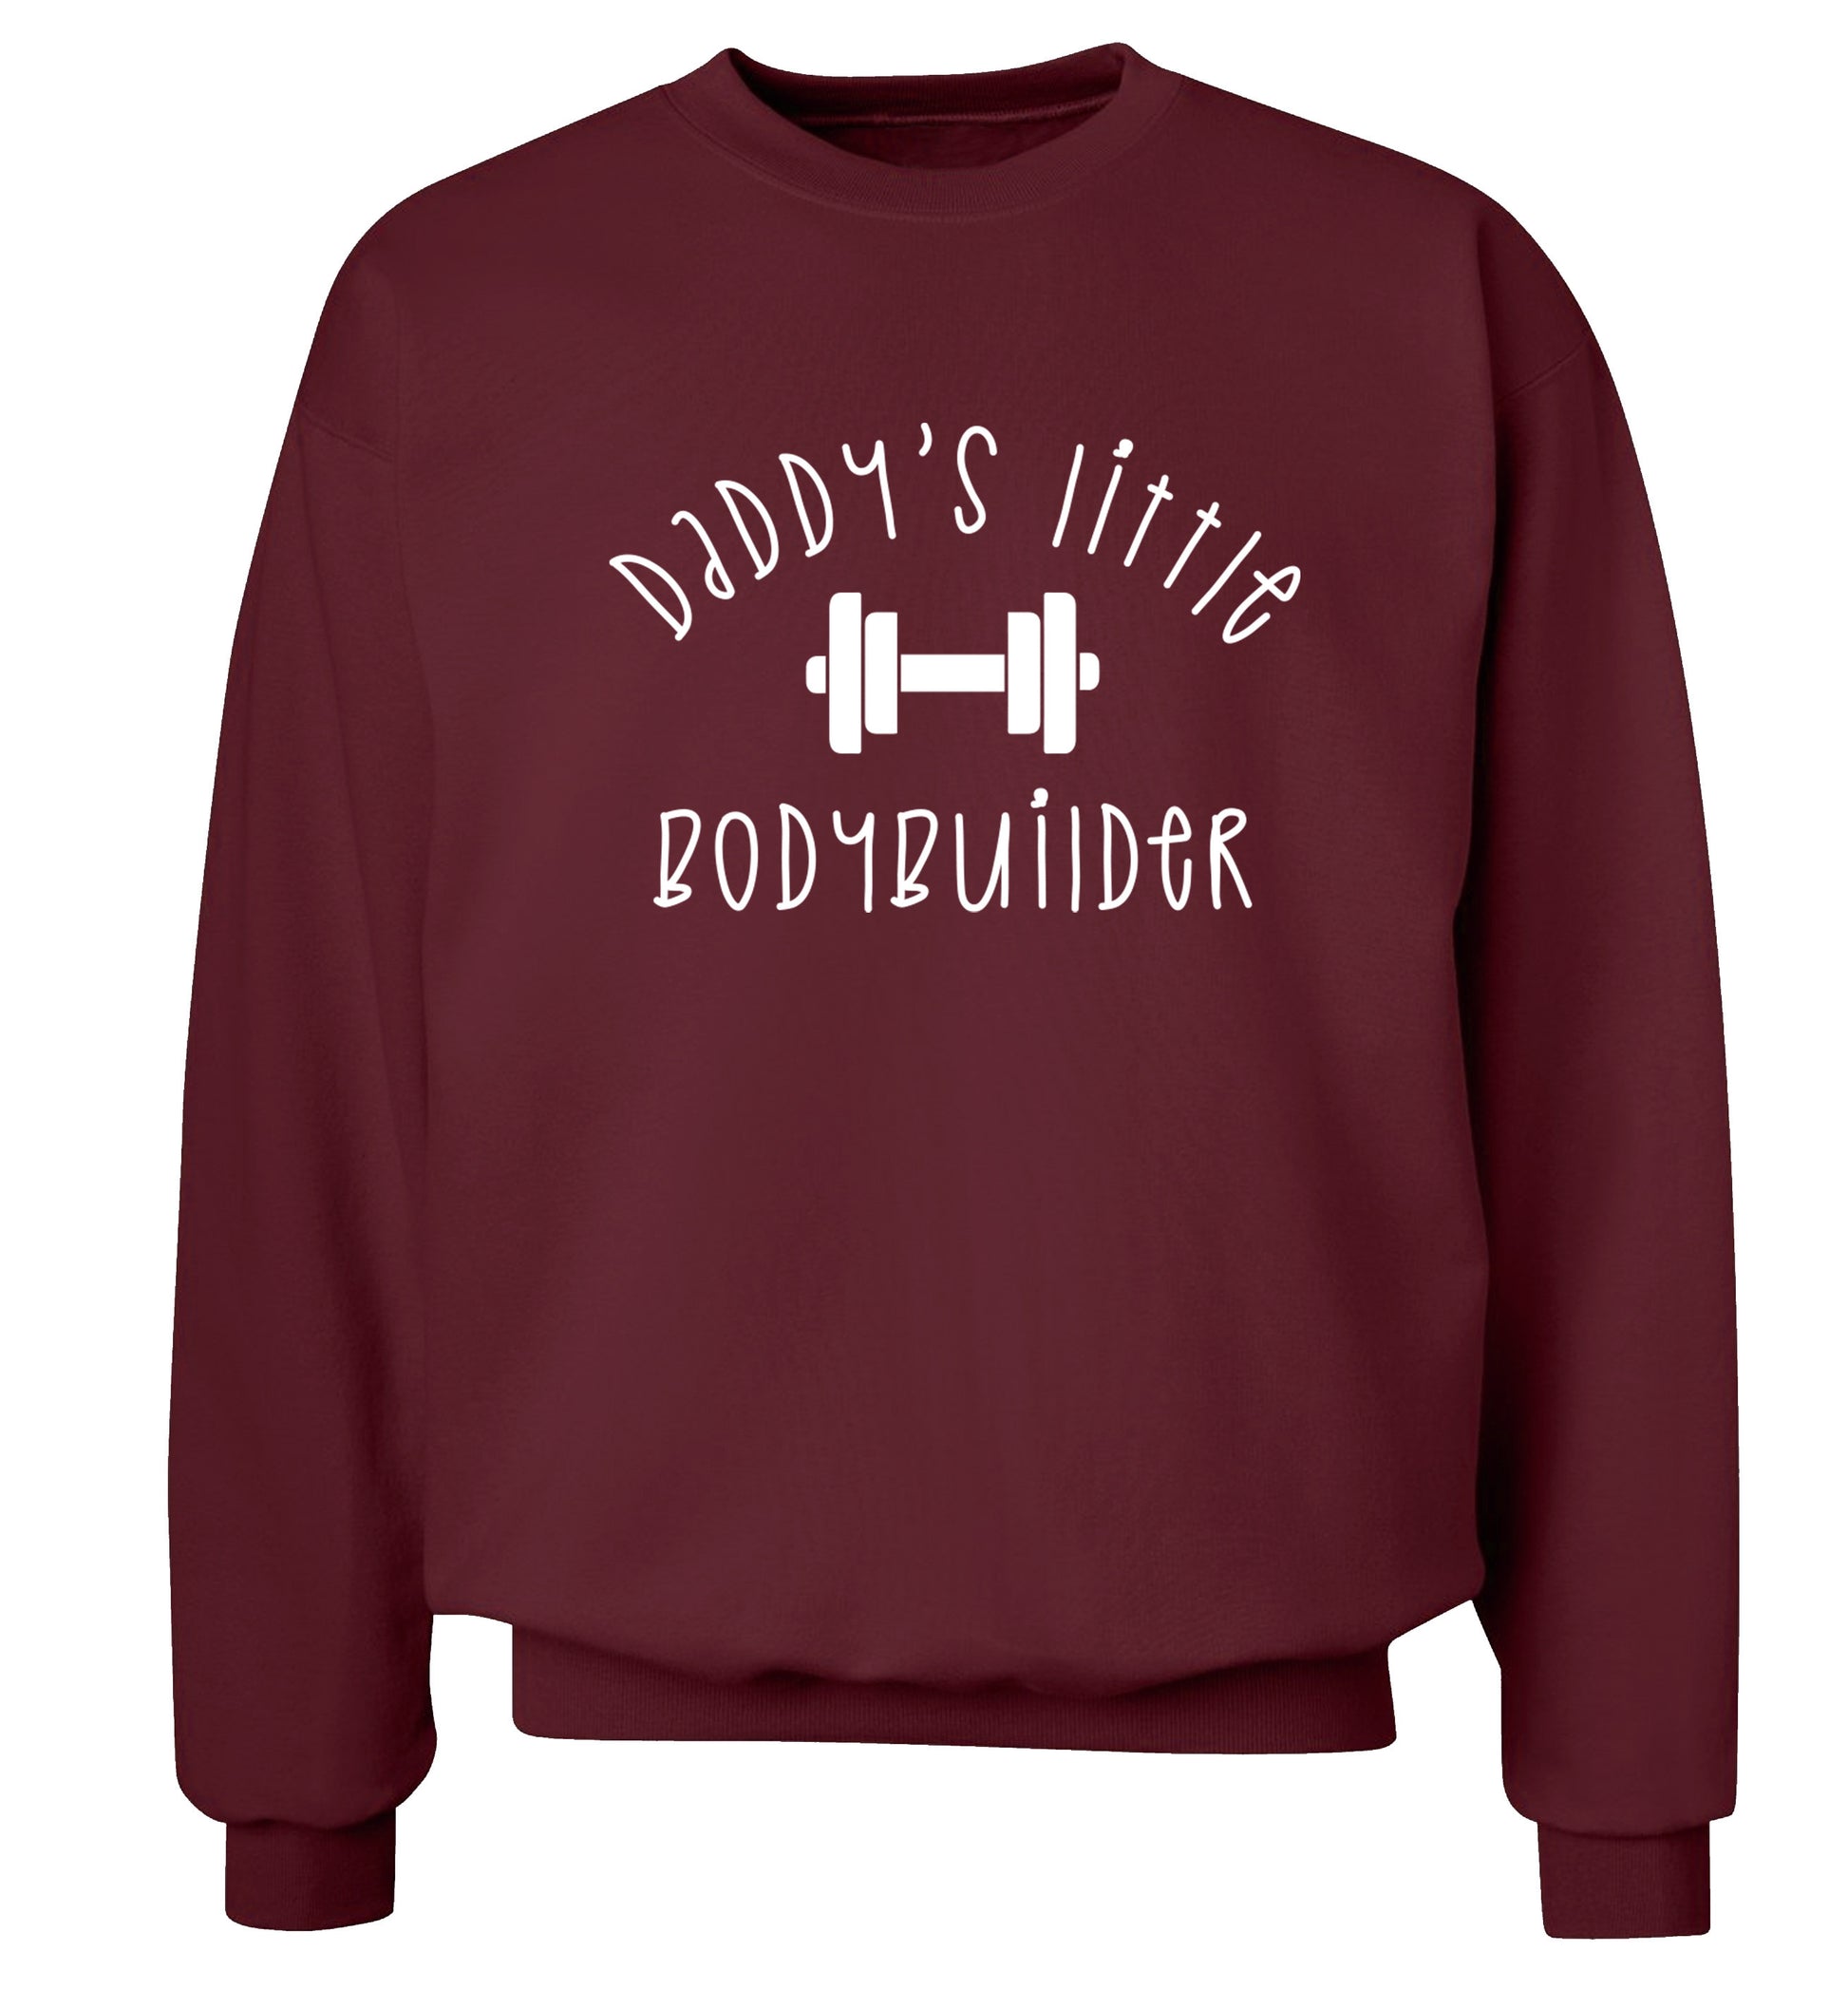 Daddy's little bodybuilder Adult's unisex maroon Sweater 2XL